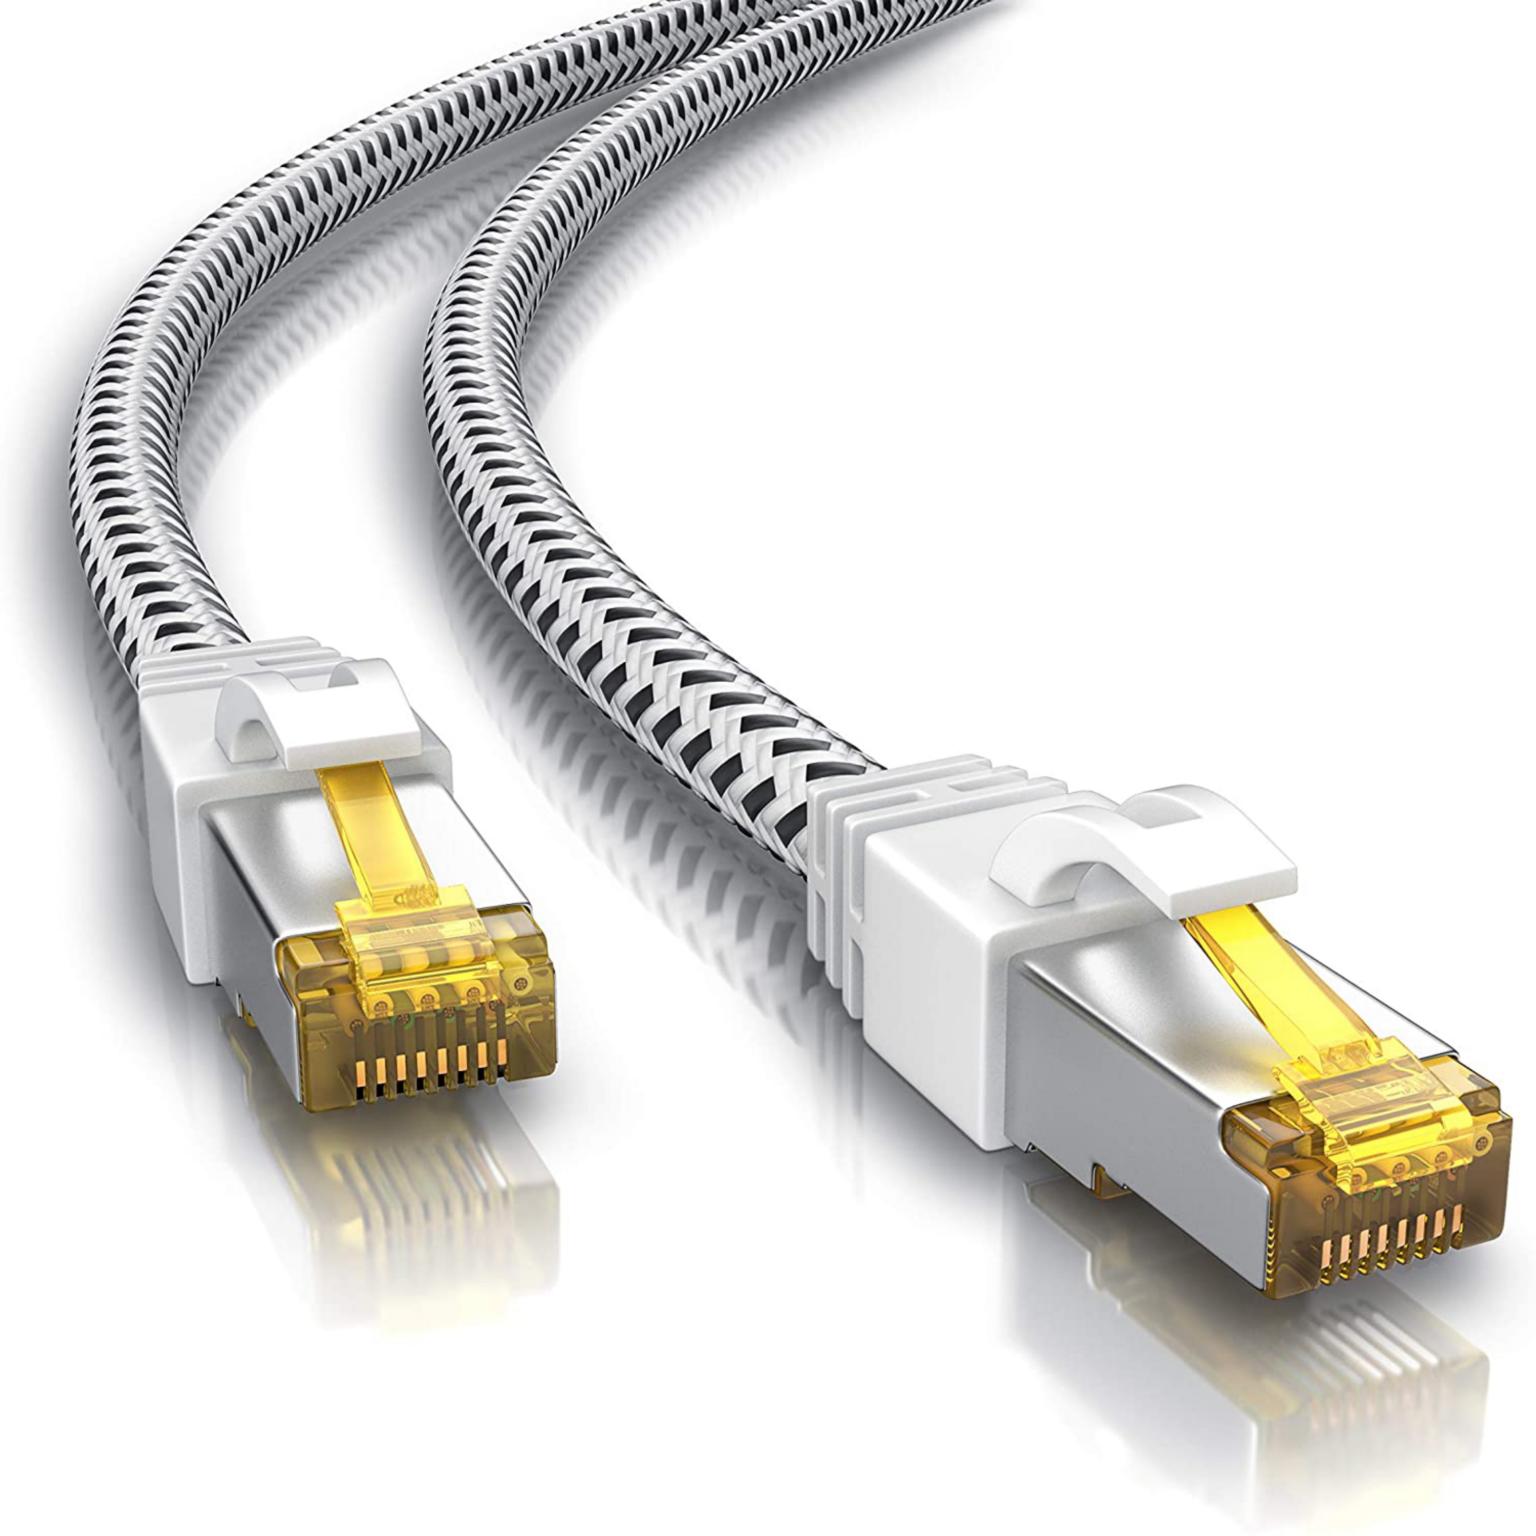 F/FTP kabel - 0.25 meter - Wit - Allteq